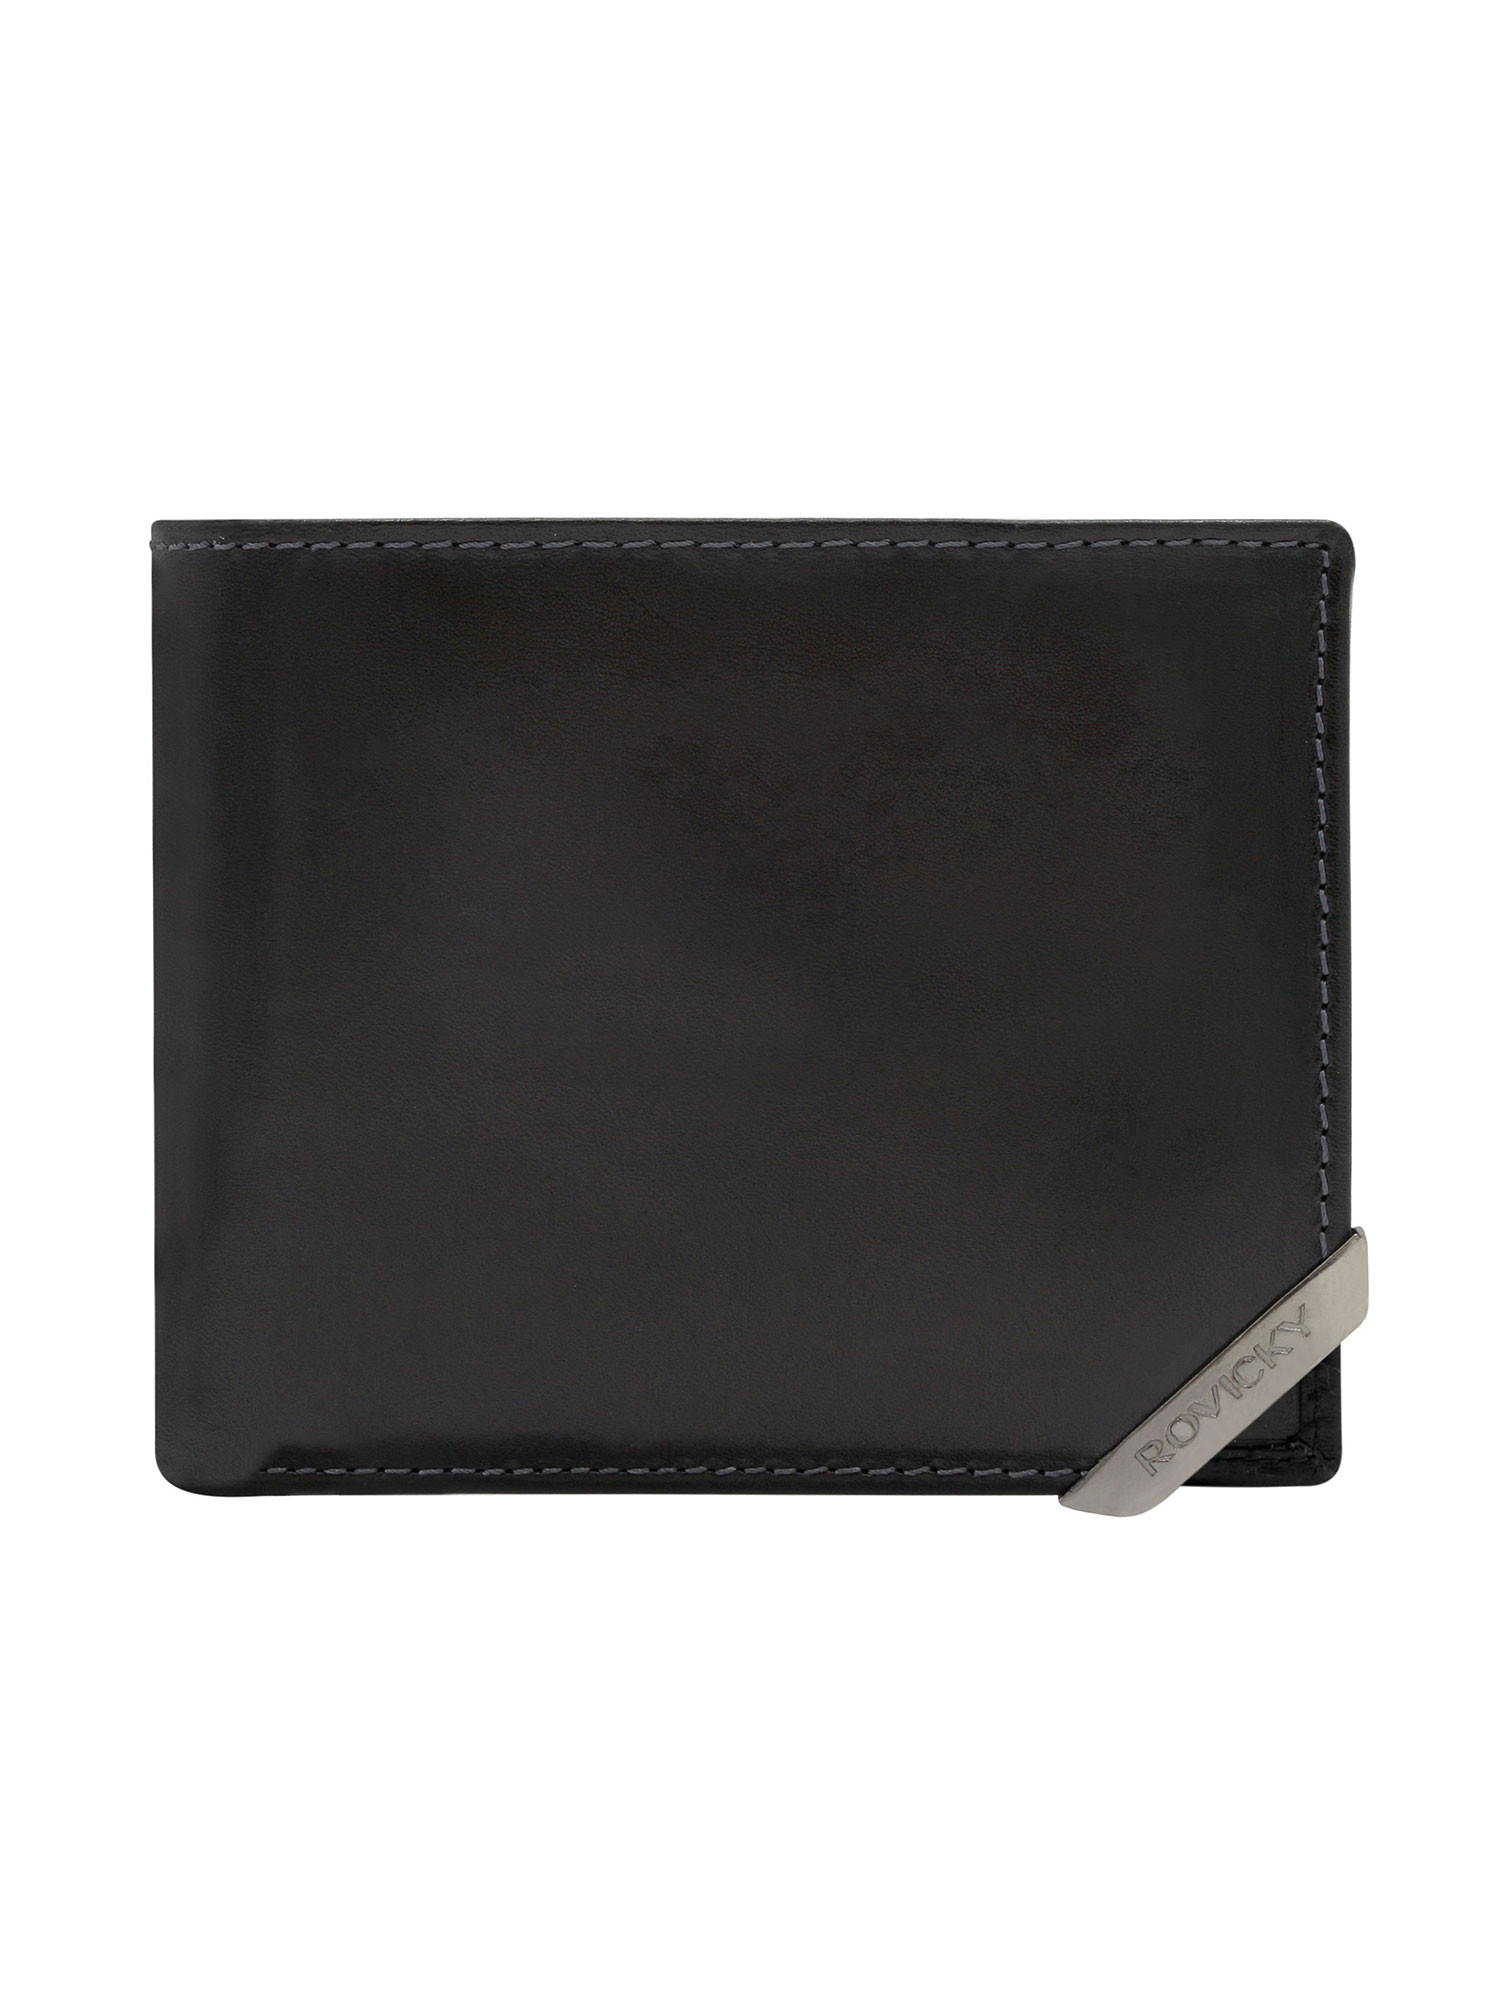 Peněženka N993 RVTM GN černá jedna velikost